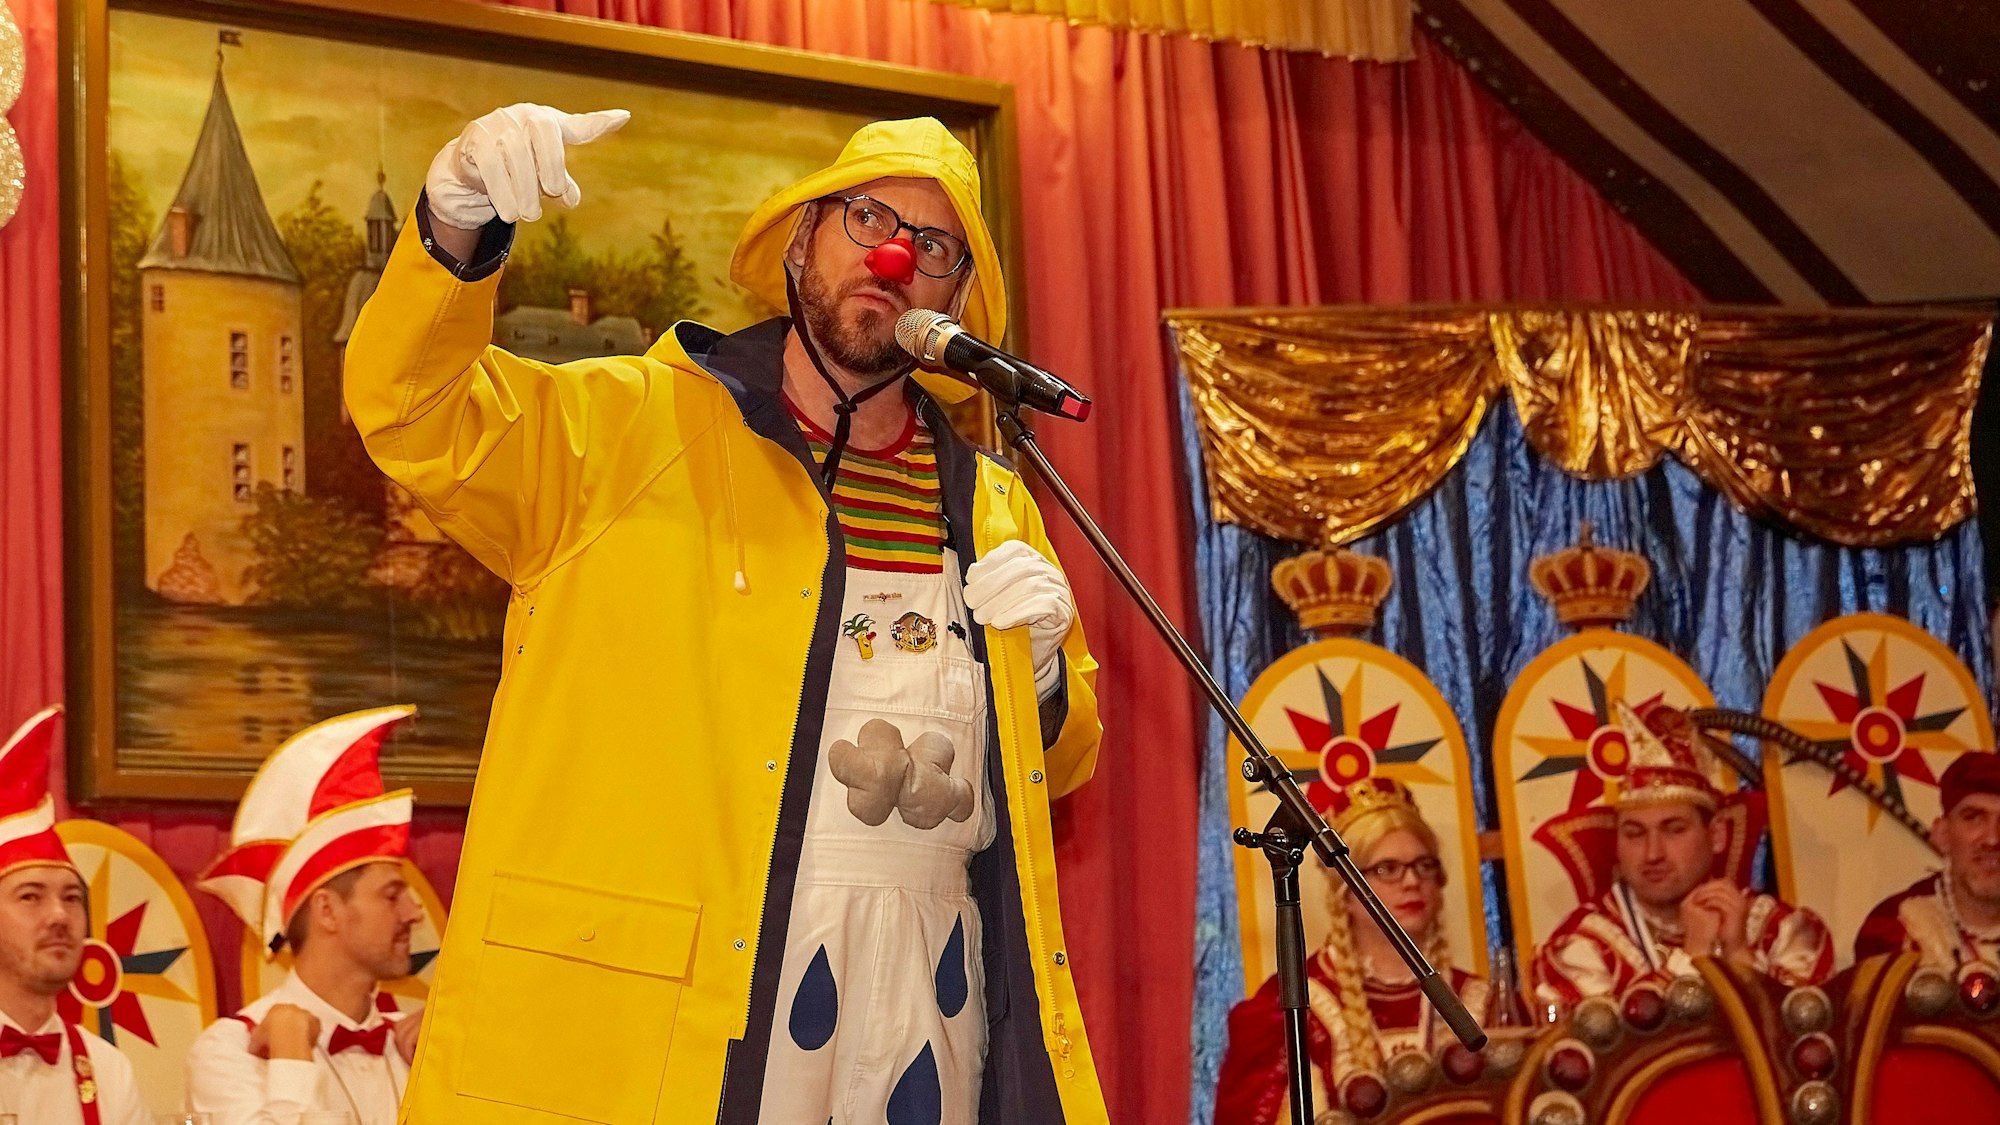 Das Bild zeigt Büttenredner Björn Wassong auf der Bühne – inklusive Regenjacke.